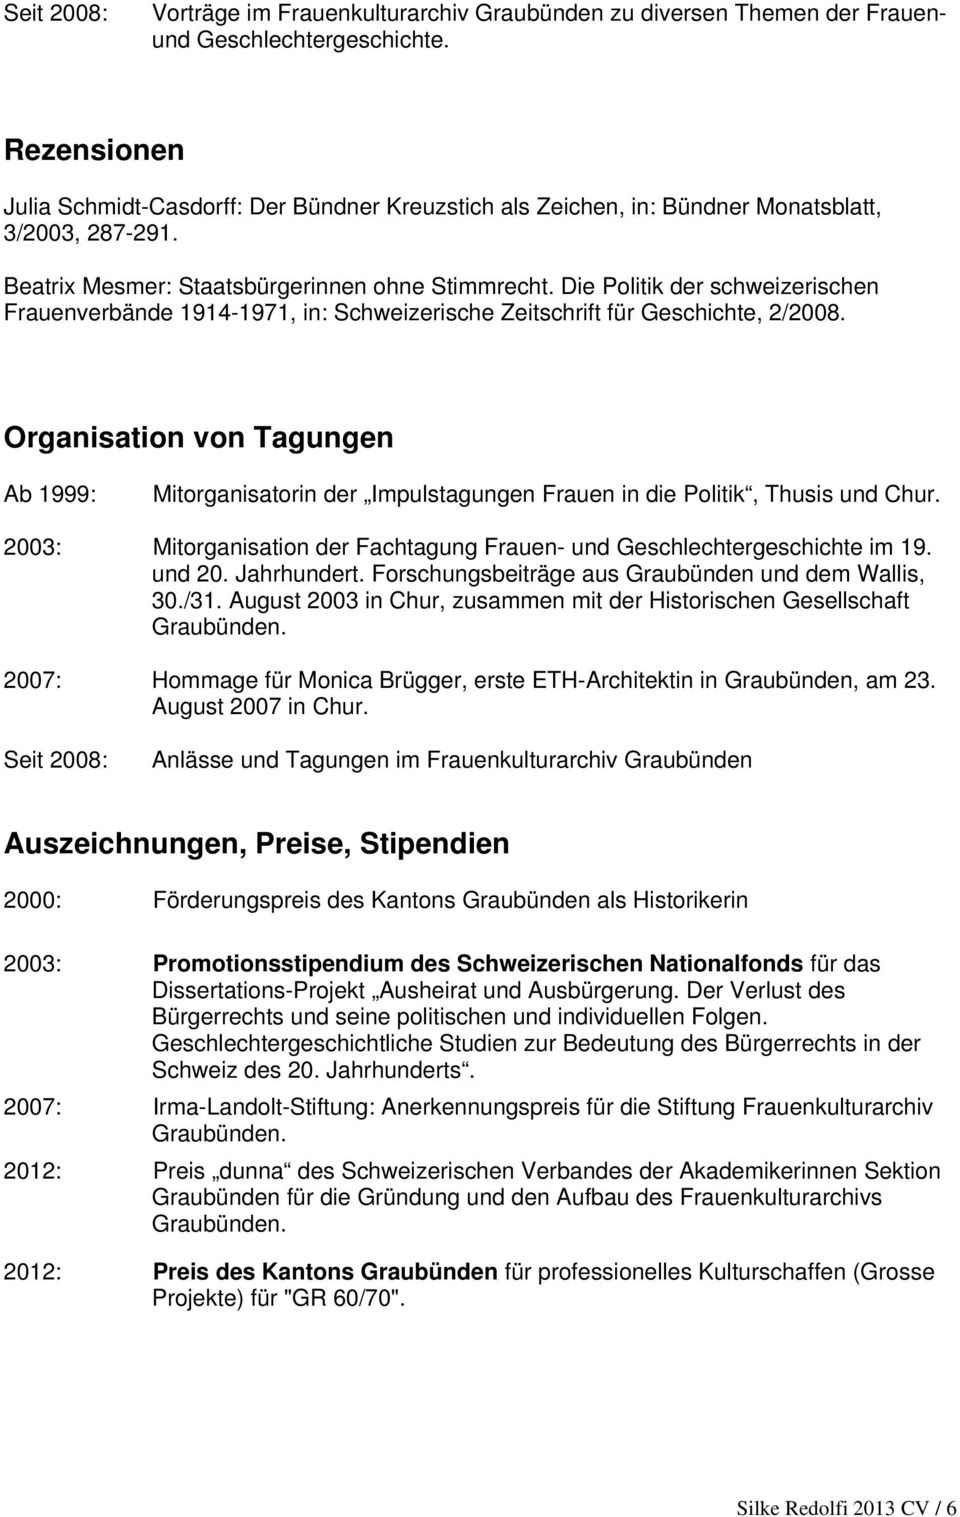 Die Politik der schweizerischen Frauenverbände 1914-1971, in: Schweizerische Zeitschrift für Geschichte, 2/2008.